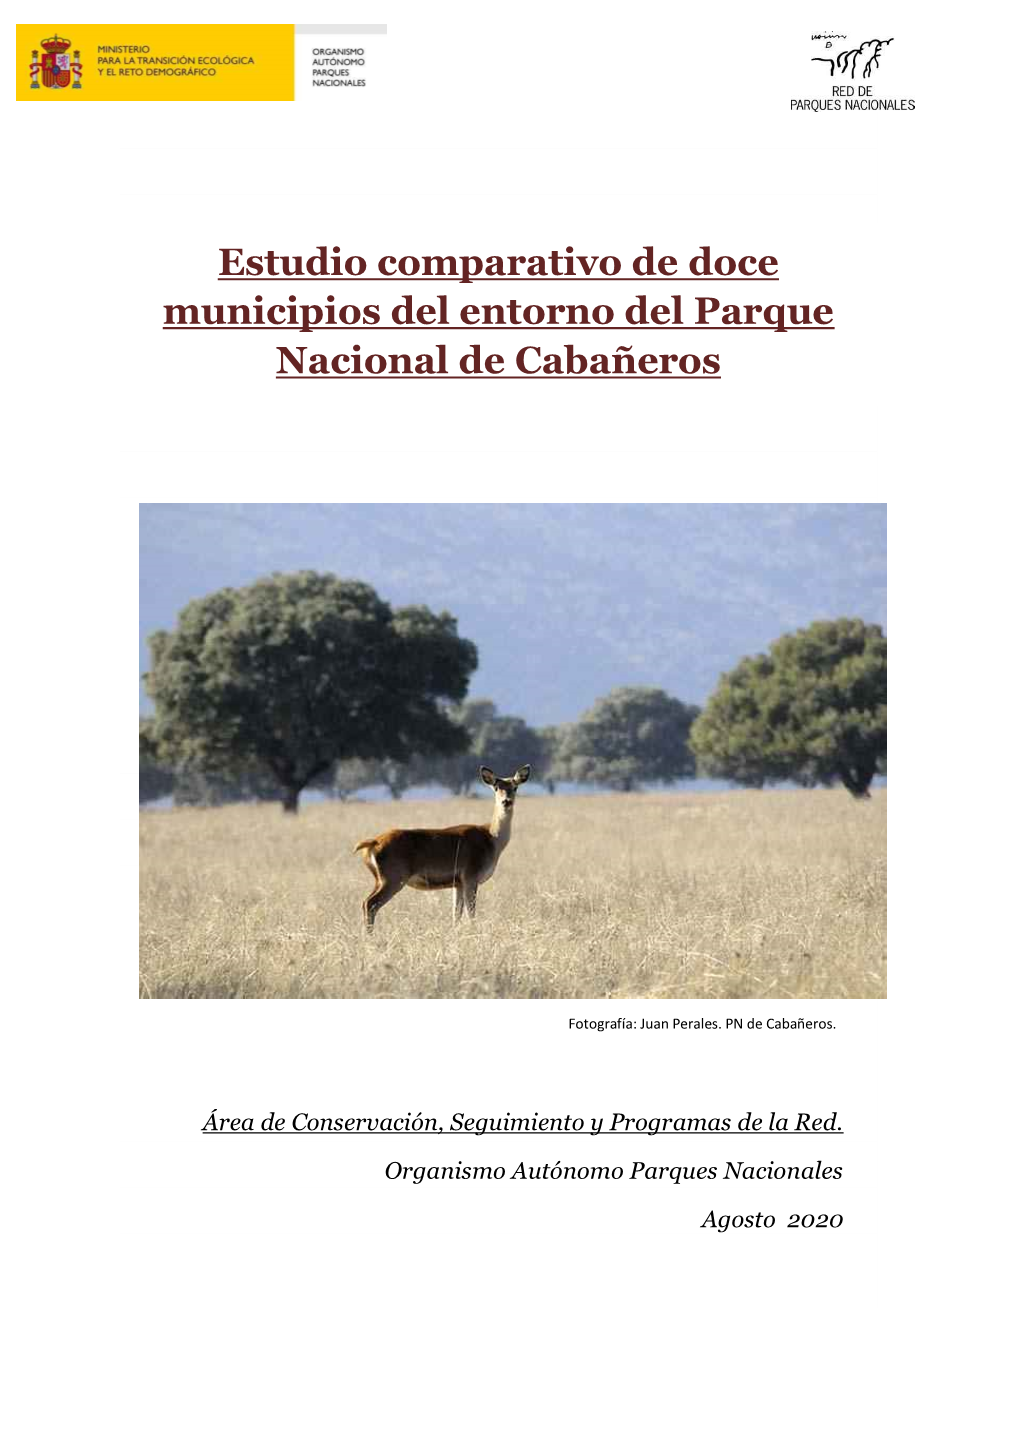 Estudio Comparativo De Doce Municipios Del Entorno Del Parque Nacional De Cabañeros